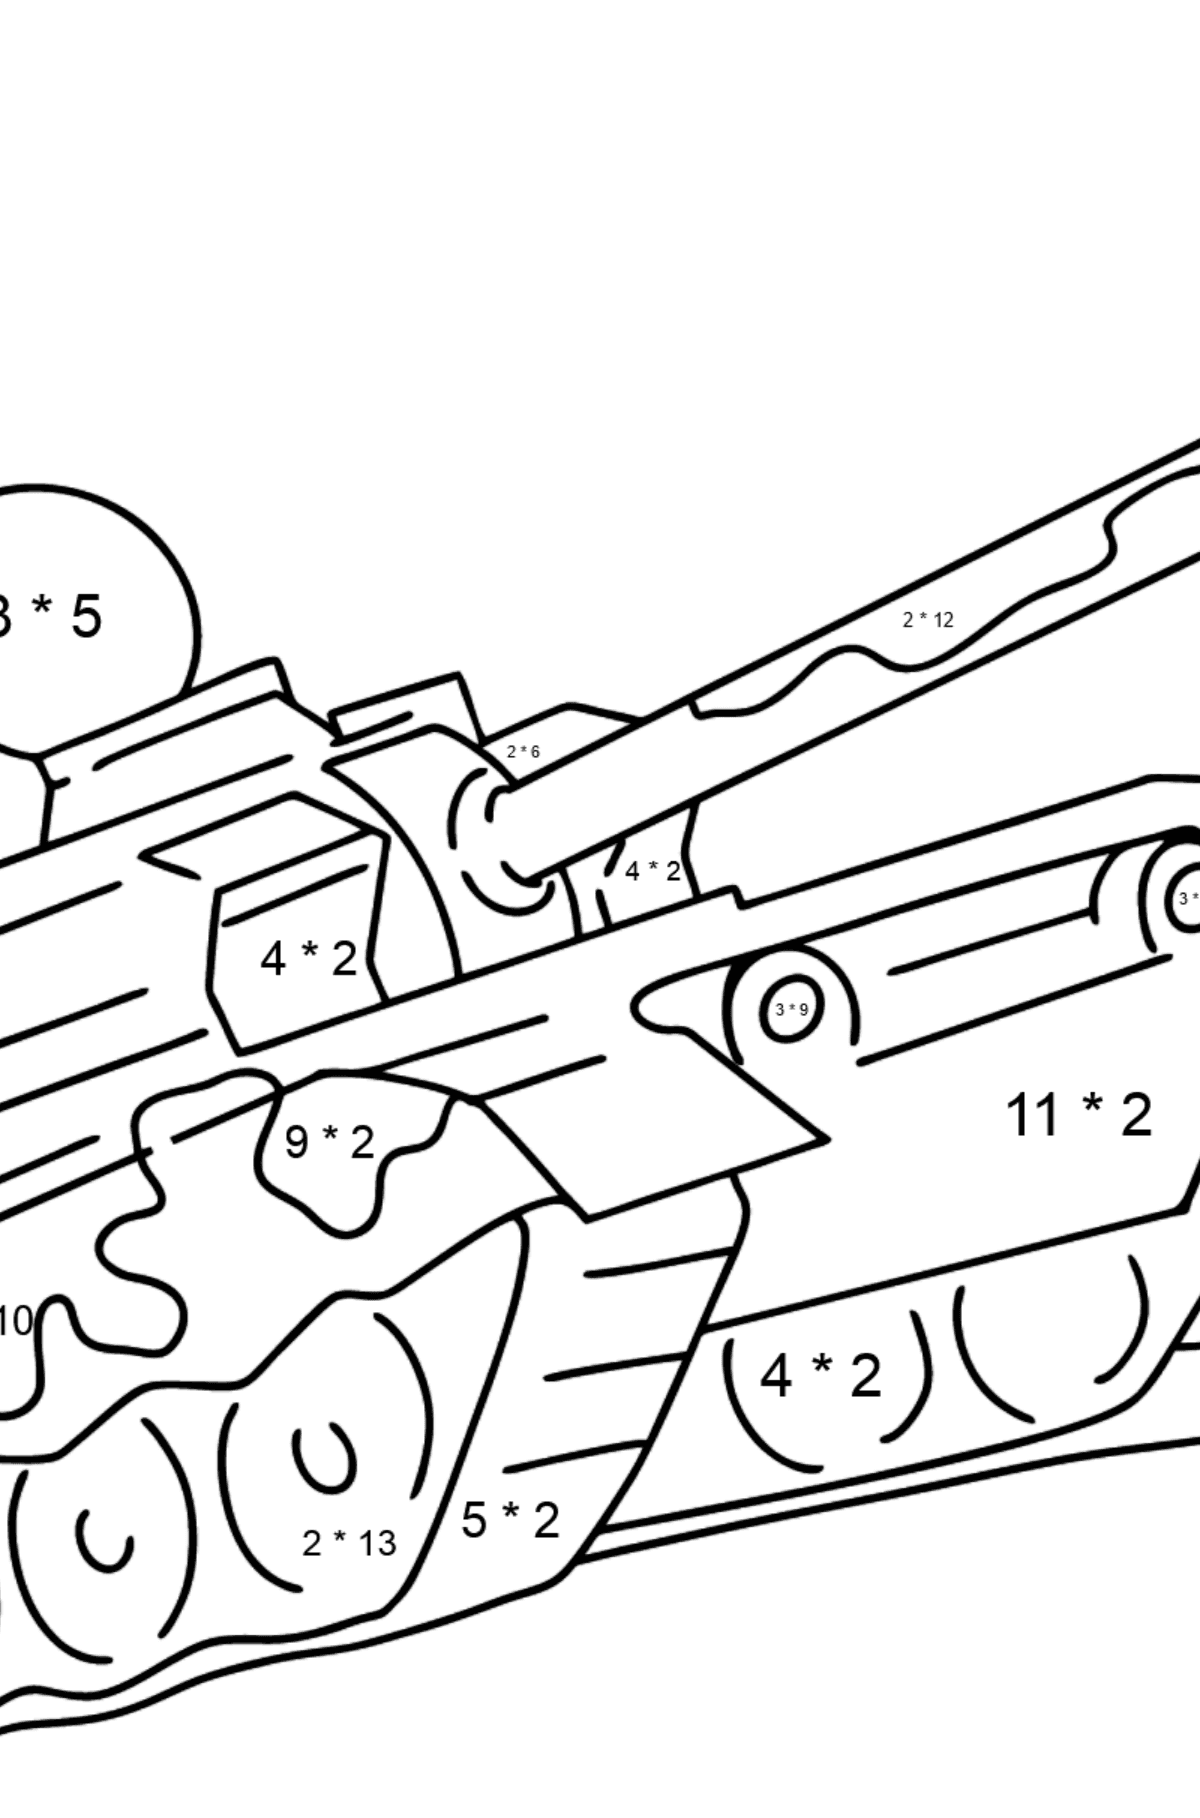 Desenho para colorir de tanques militares - Colorindo com Matemática - Multiplicação para Crianças